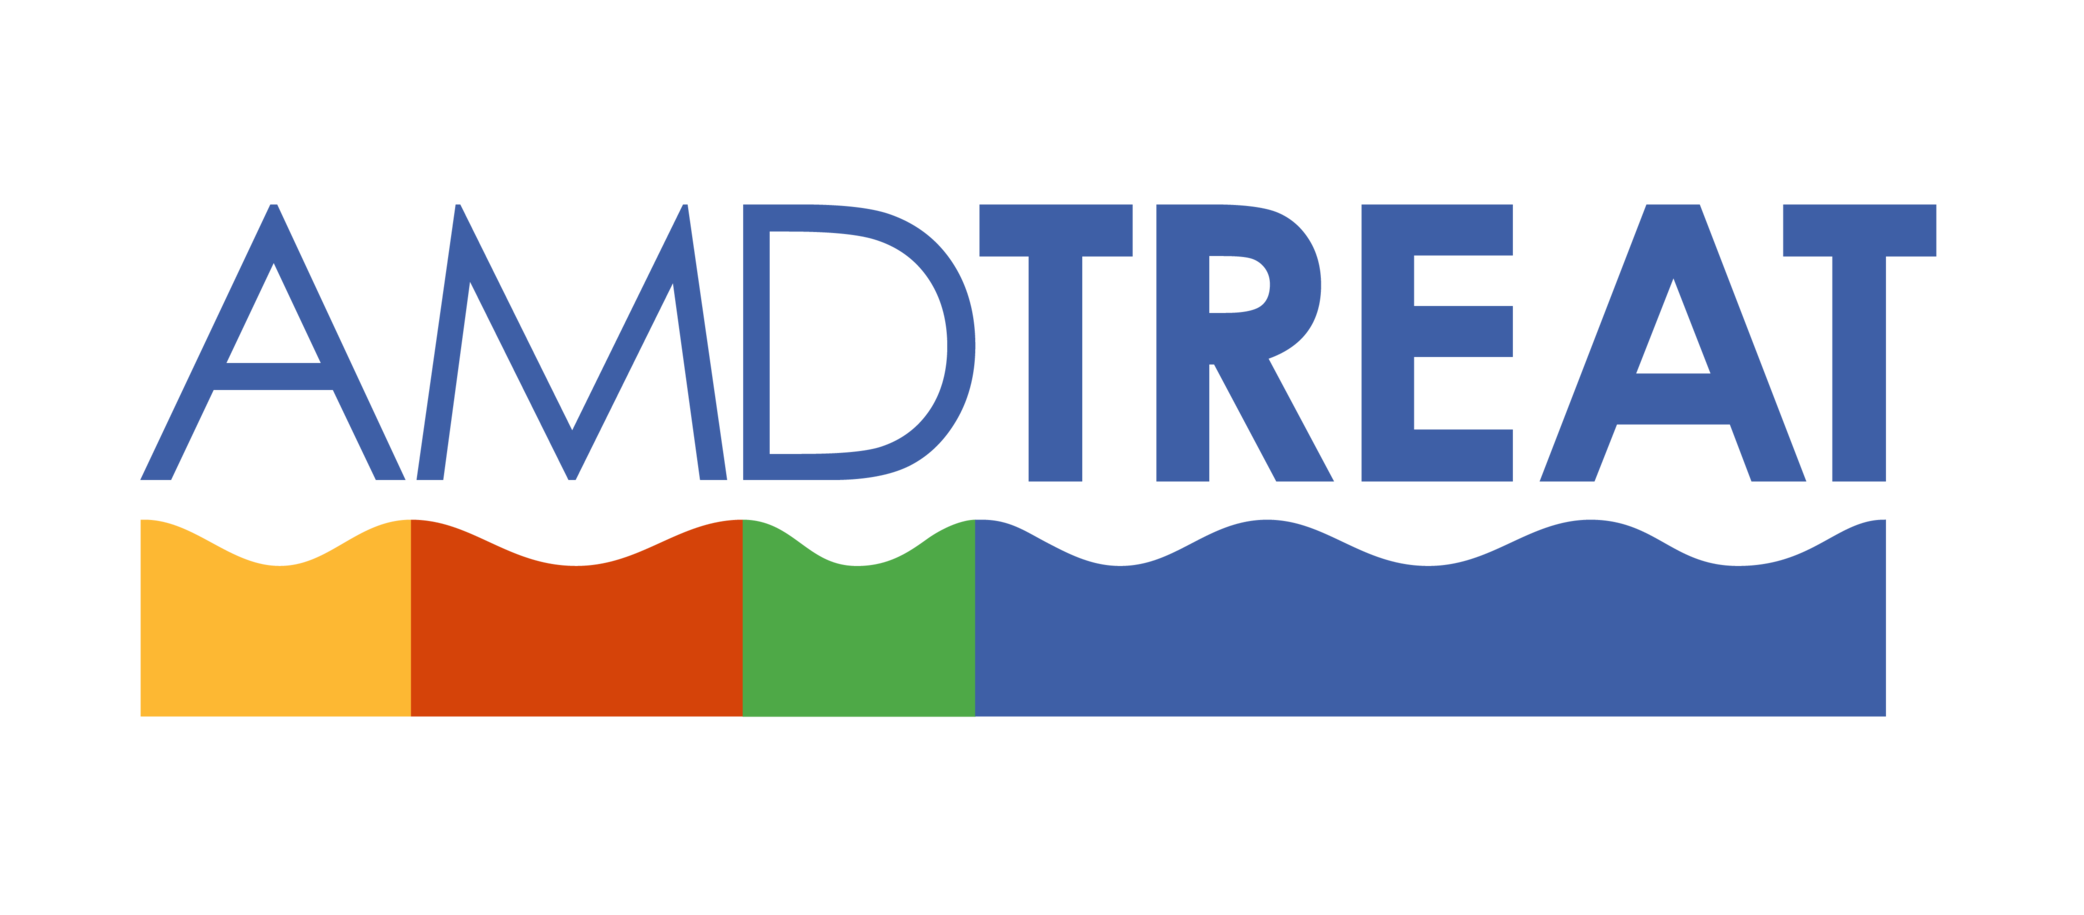 OSMRE AMDTreat graphic logo.